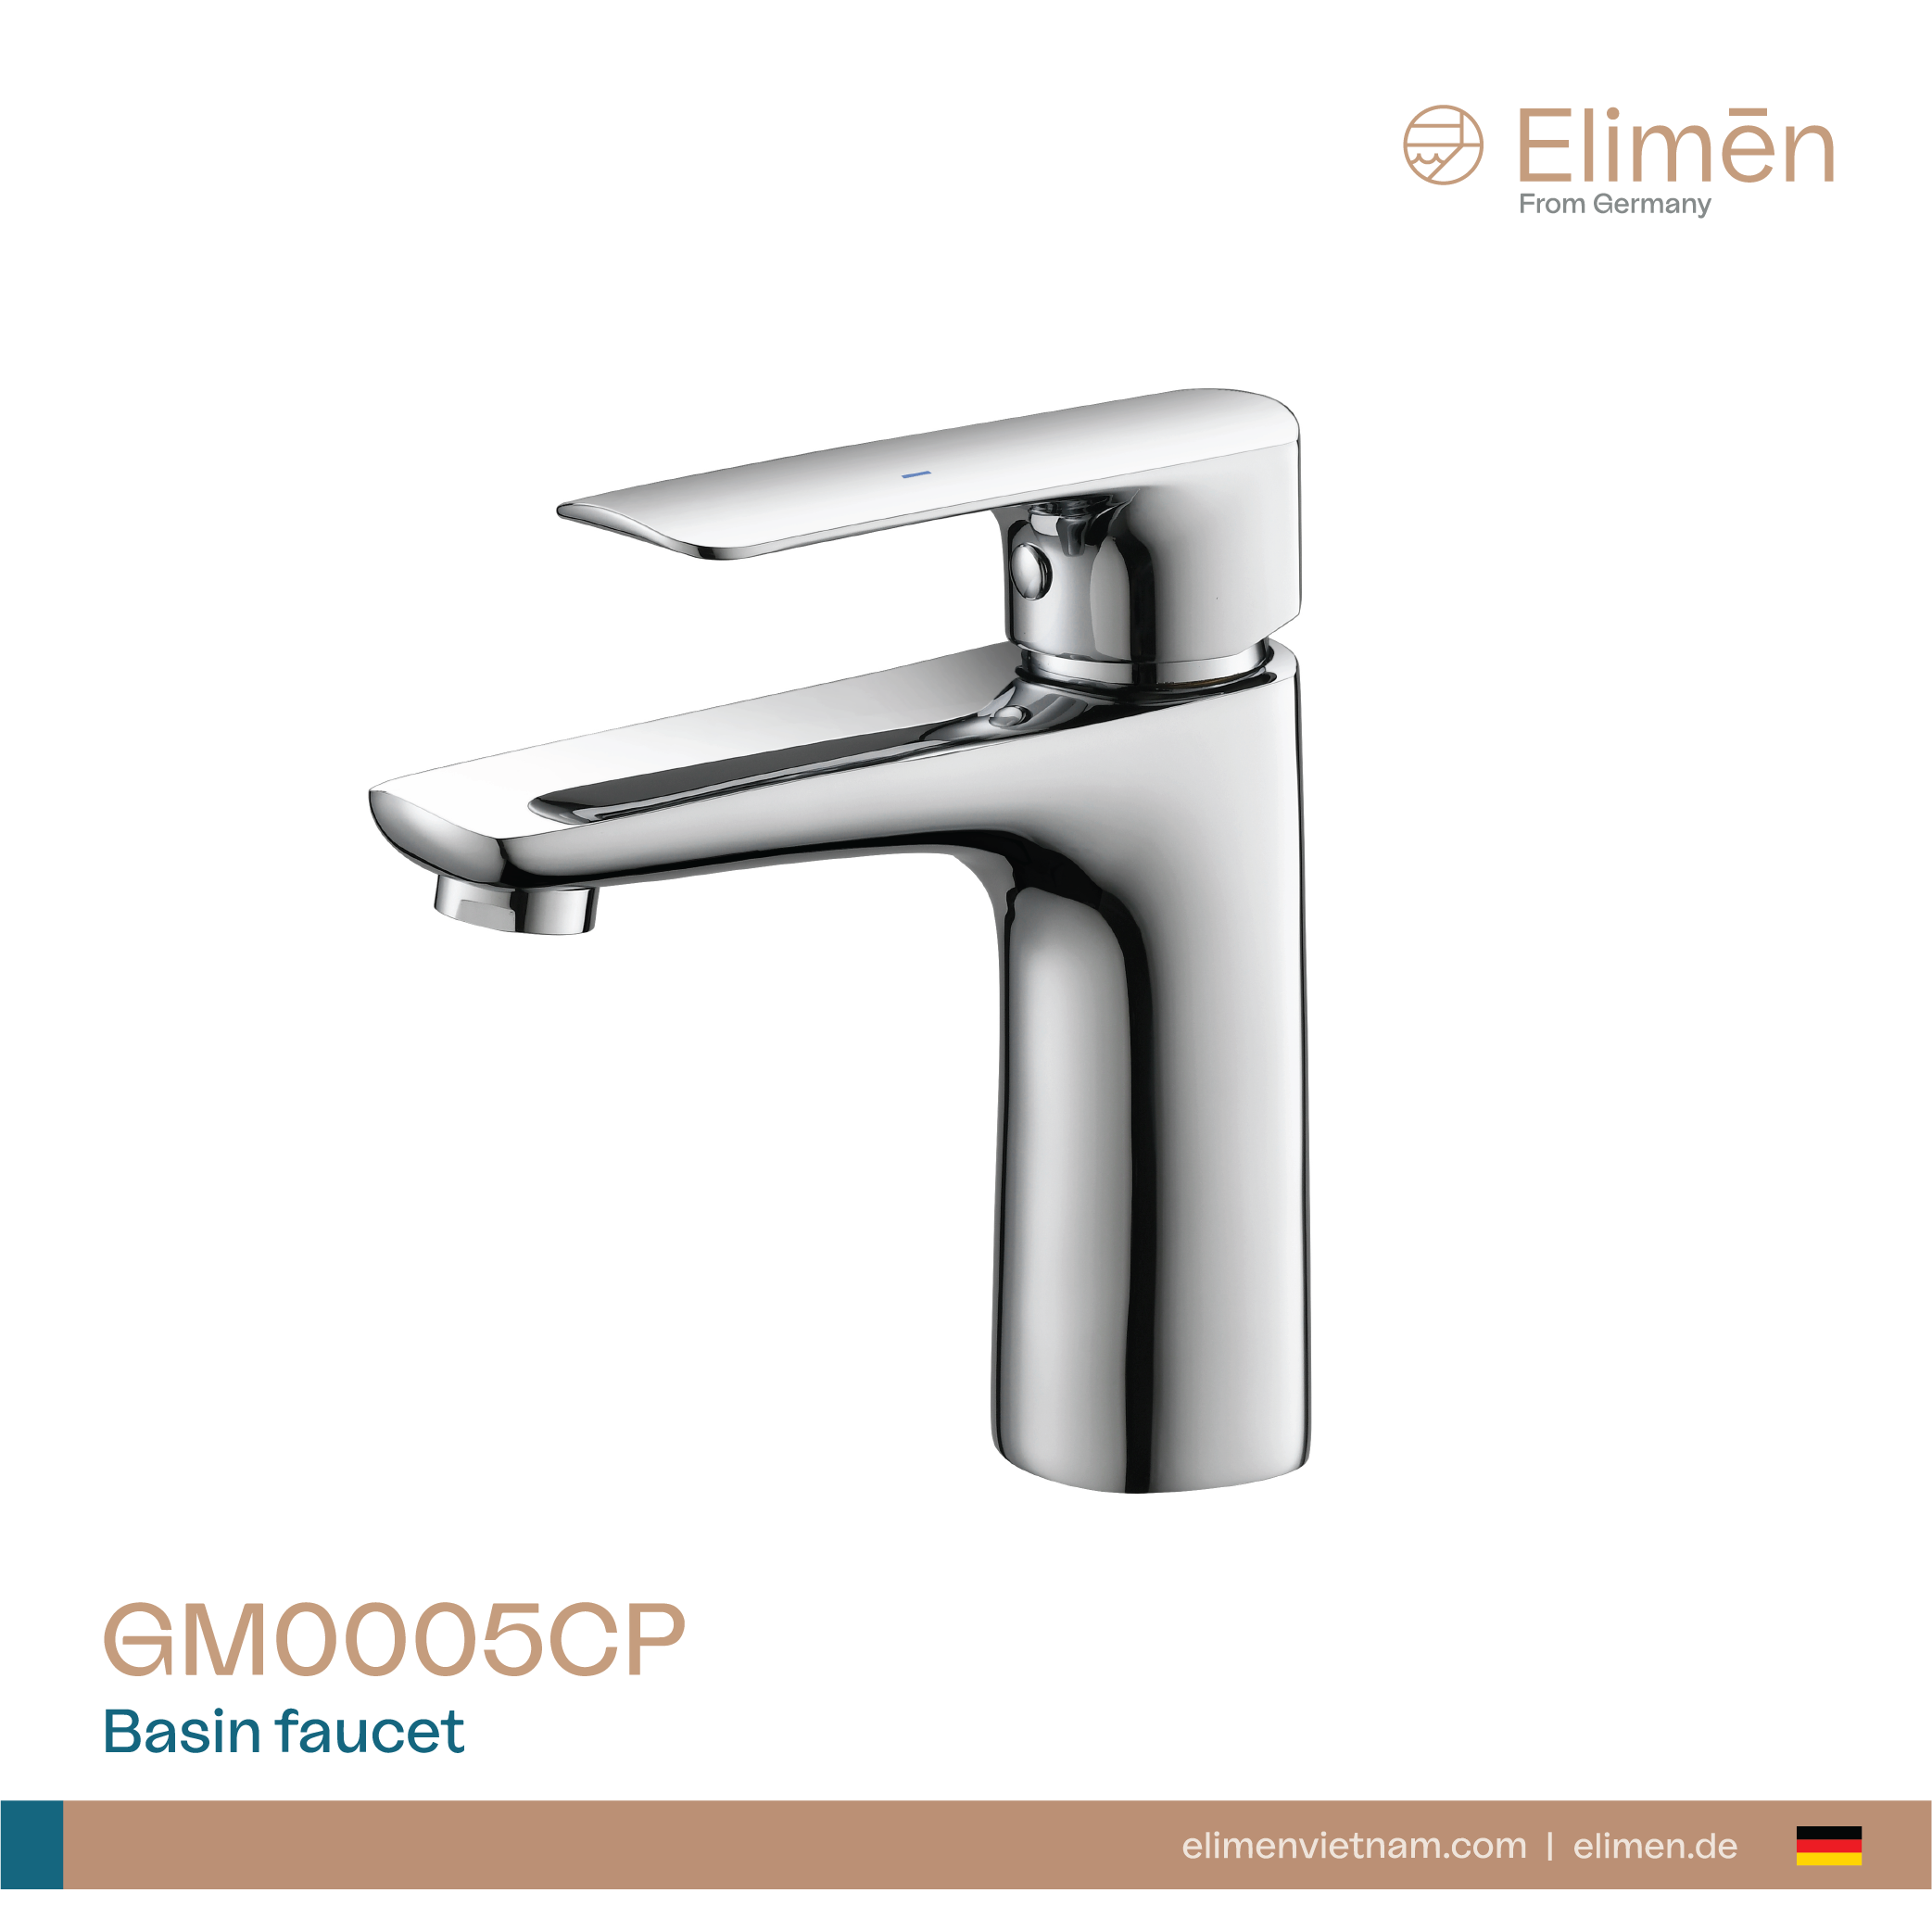 Elimen basin faucet - Code GM0005CP